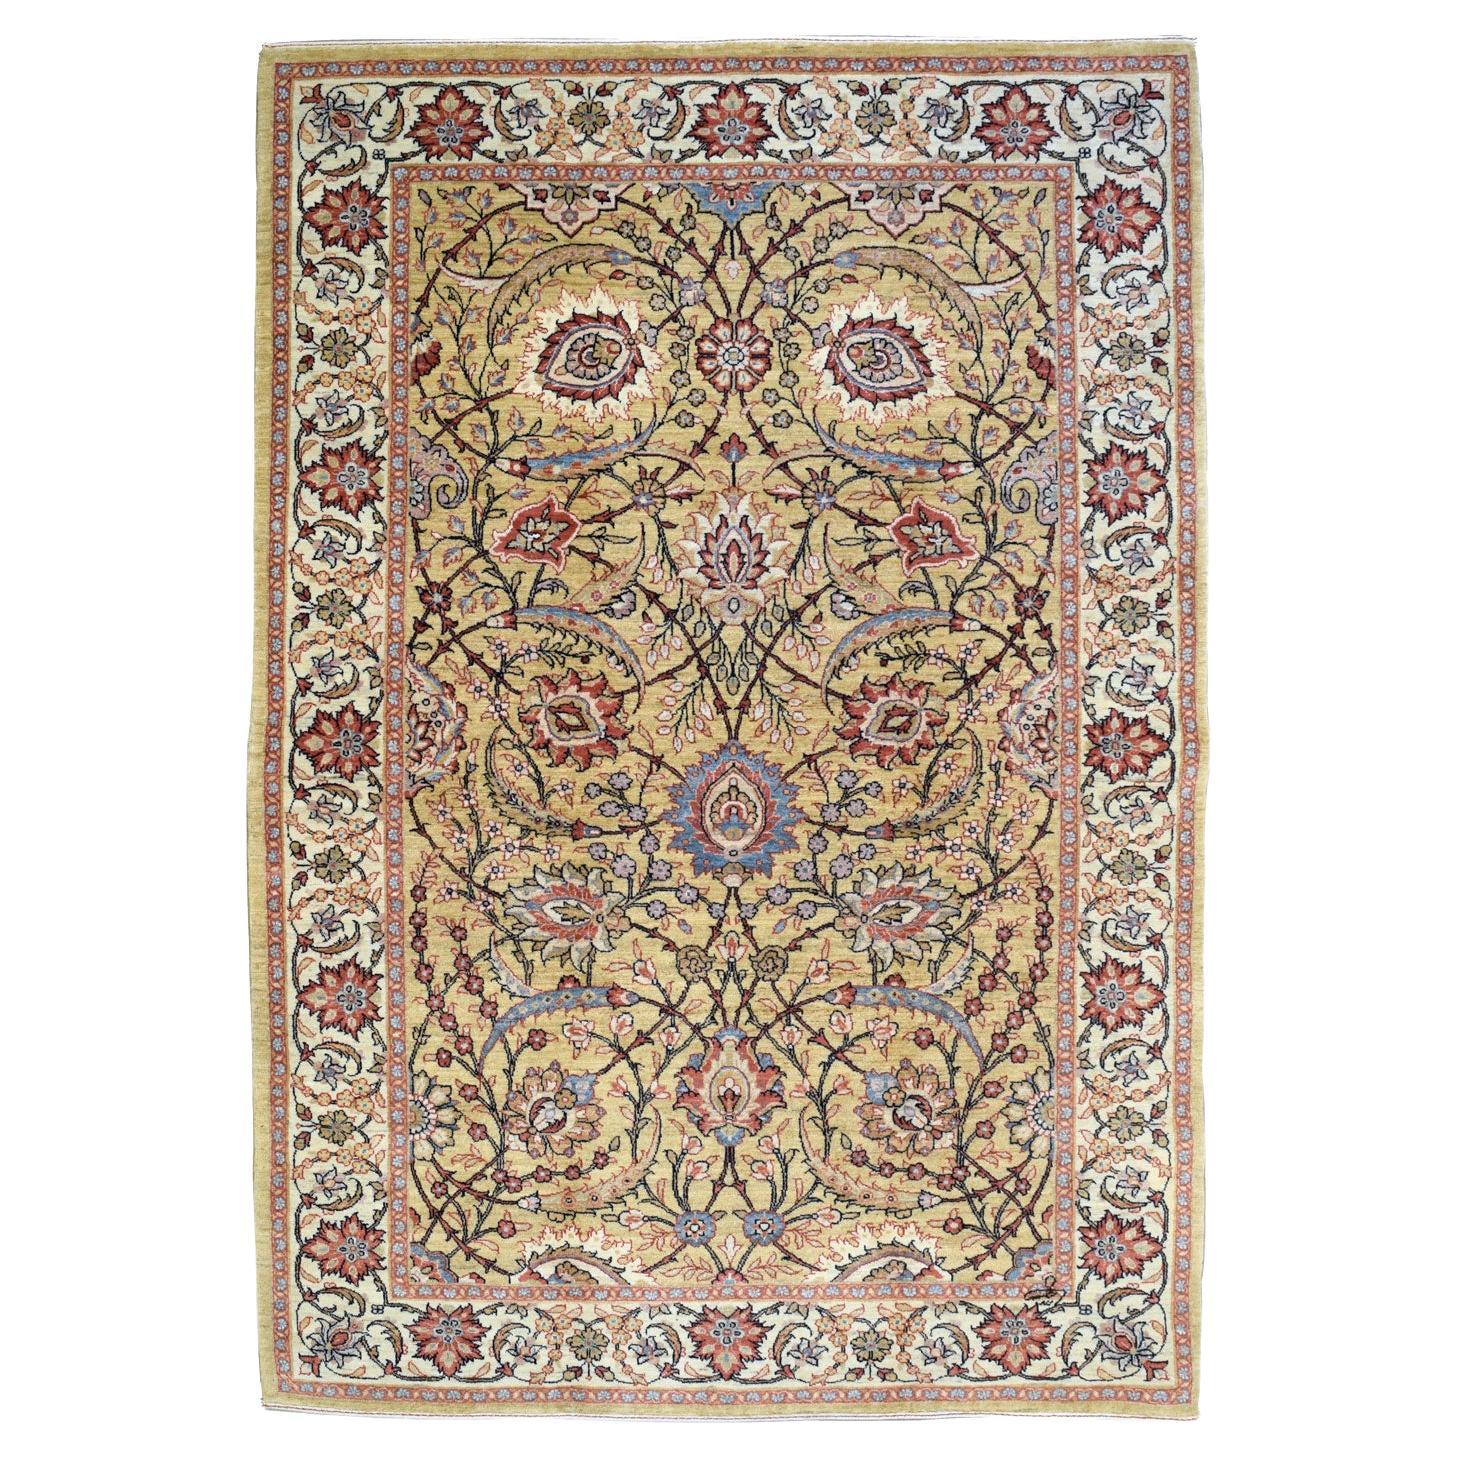 Mohtasham Persischer Mohtasham-Teppich aus reiner Wolle, Creme, Rot und Blau, 5' x 7'